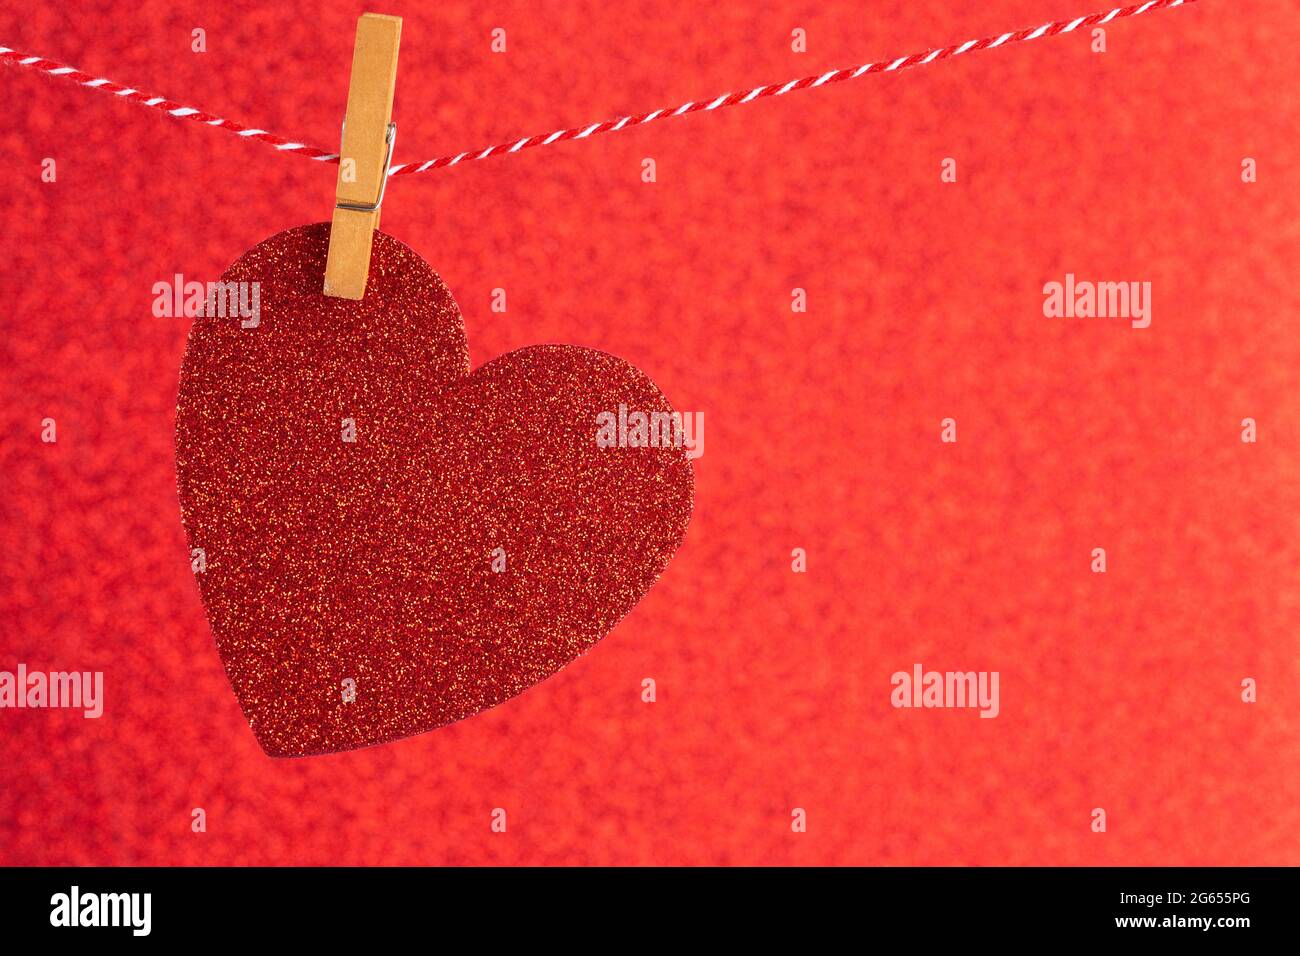 Arrière-plan sur le thème de l'amour avec espace de copie pour ajouter un message de Saint-Valentin ou une note d'amour Banque D'Images